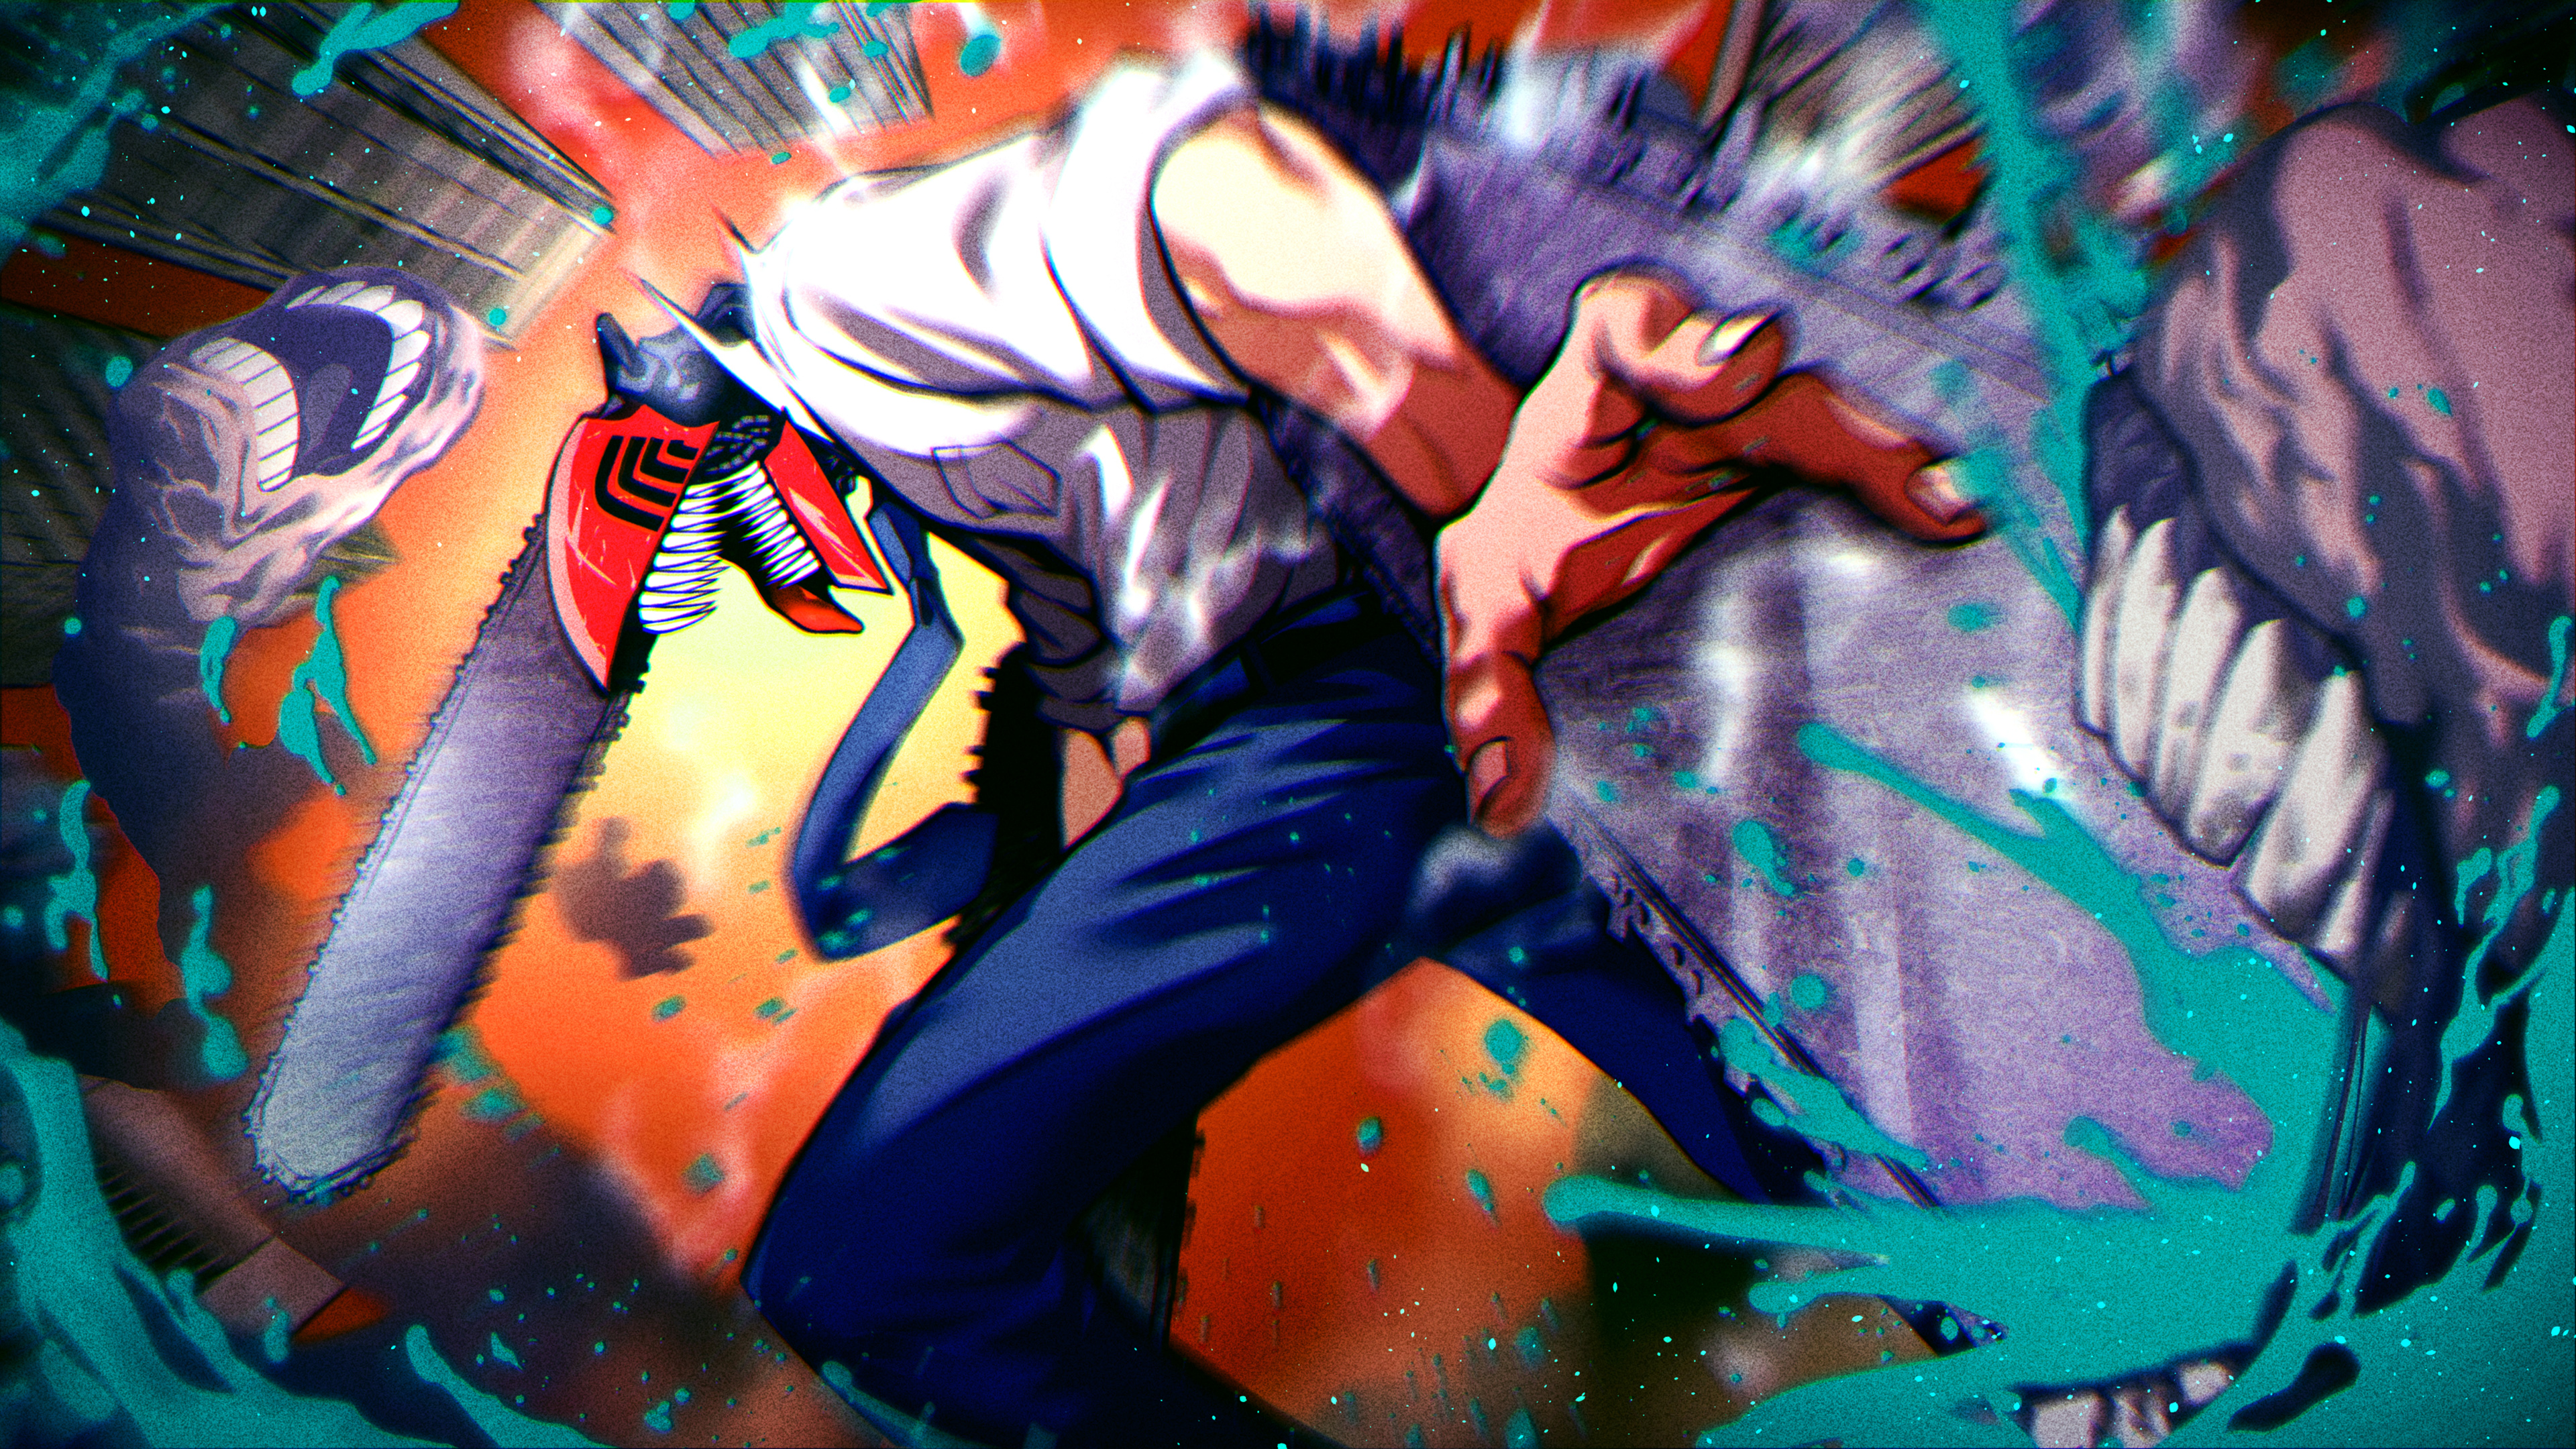 Anime Chainsaw Man 4k Ultra HD Wallpaper by bikku